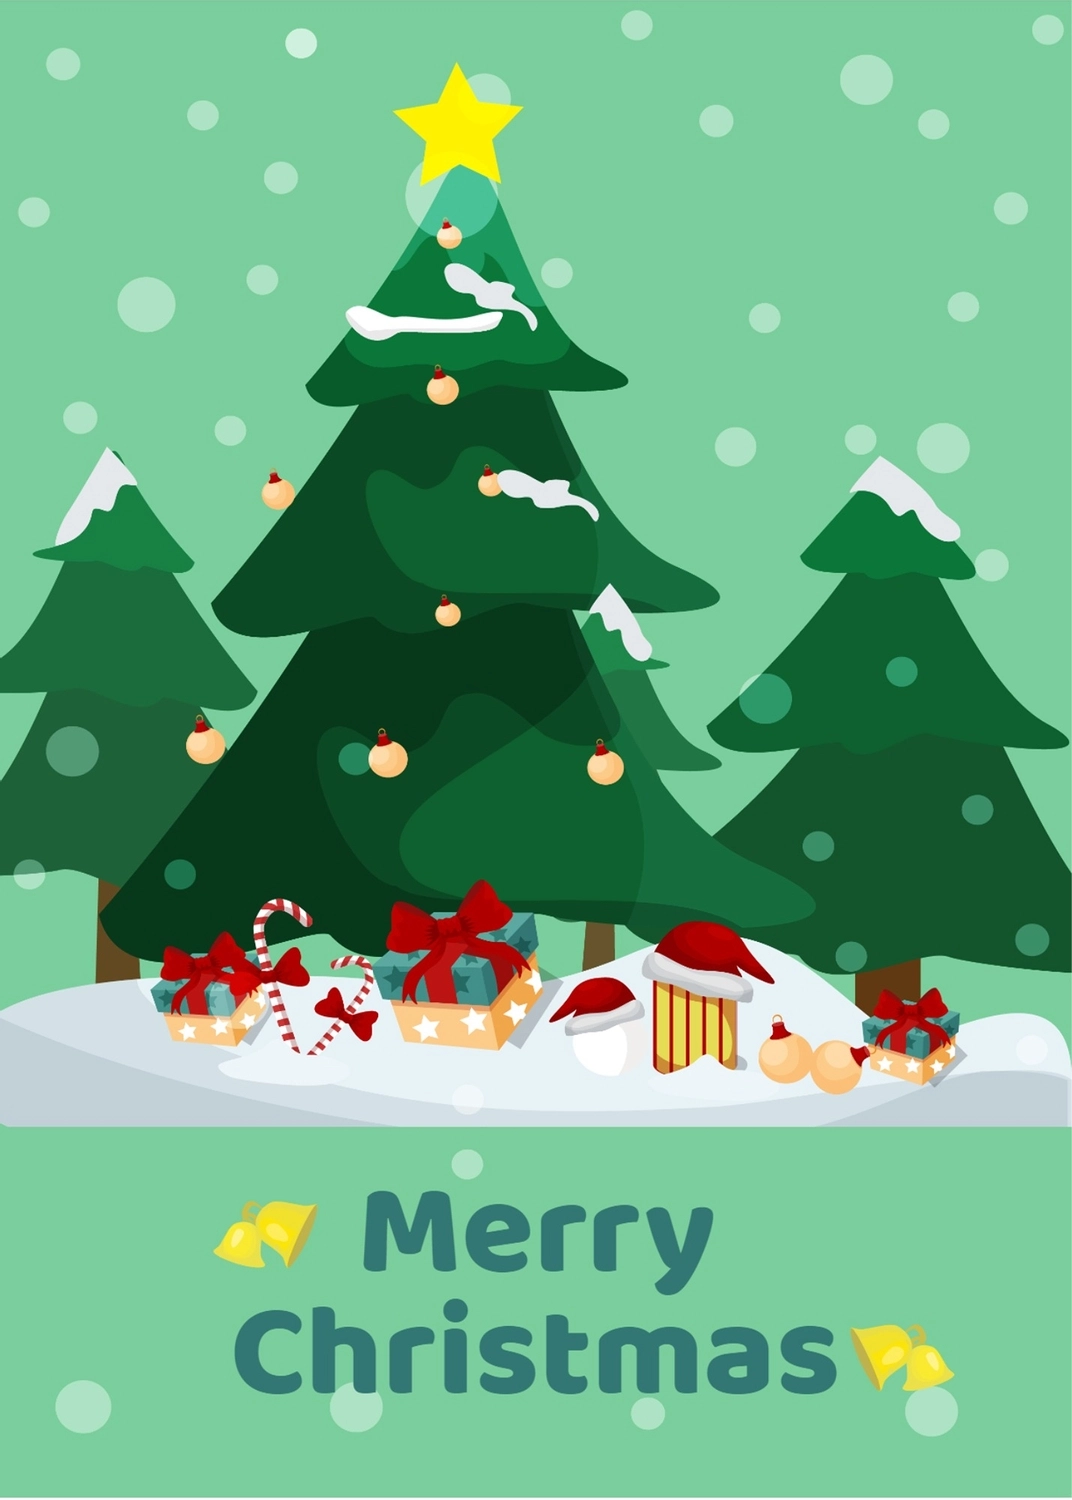 クリスマスツリーとプレゼント, キャンディーケーン, クリスマスカード, 作成, メッセージカードテンプレート